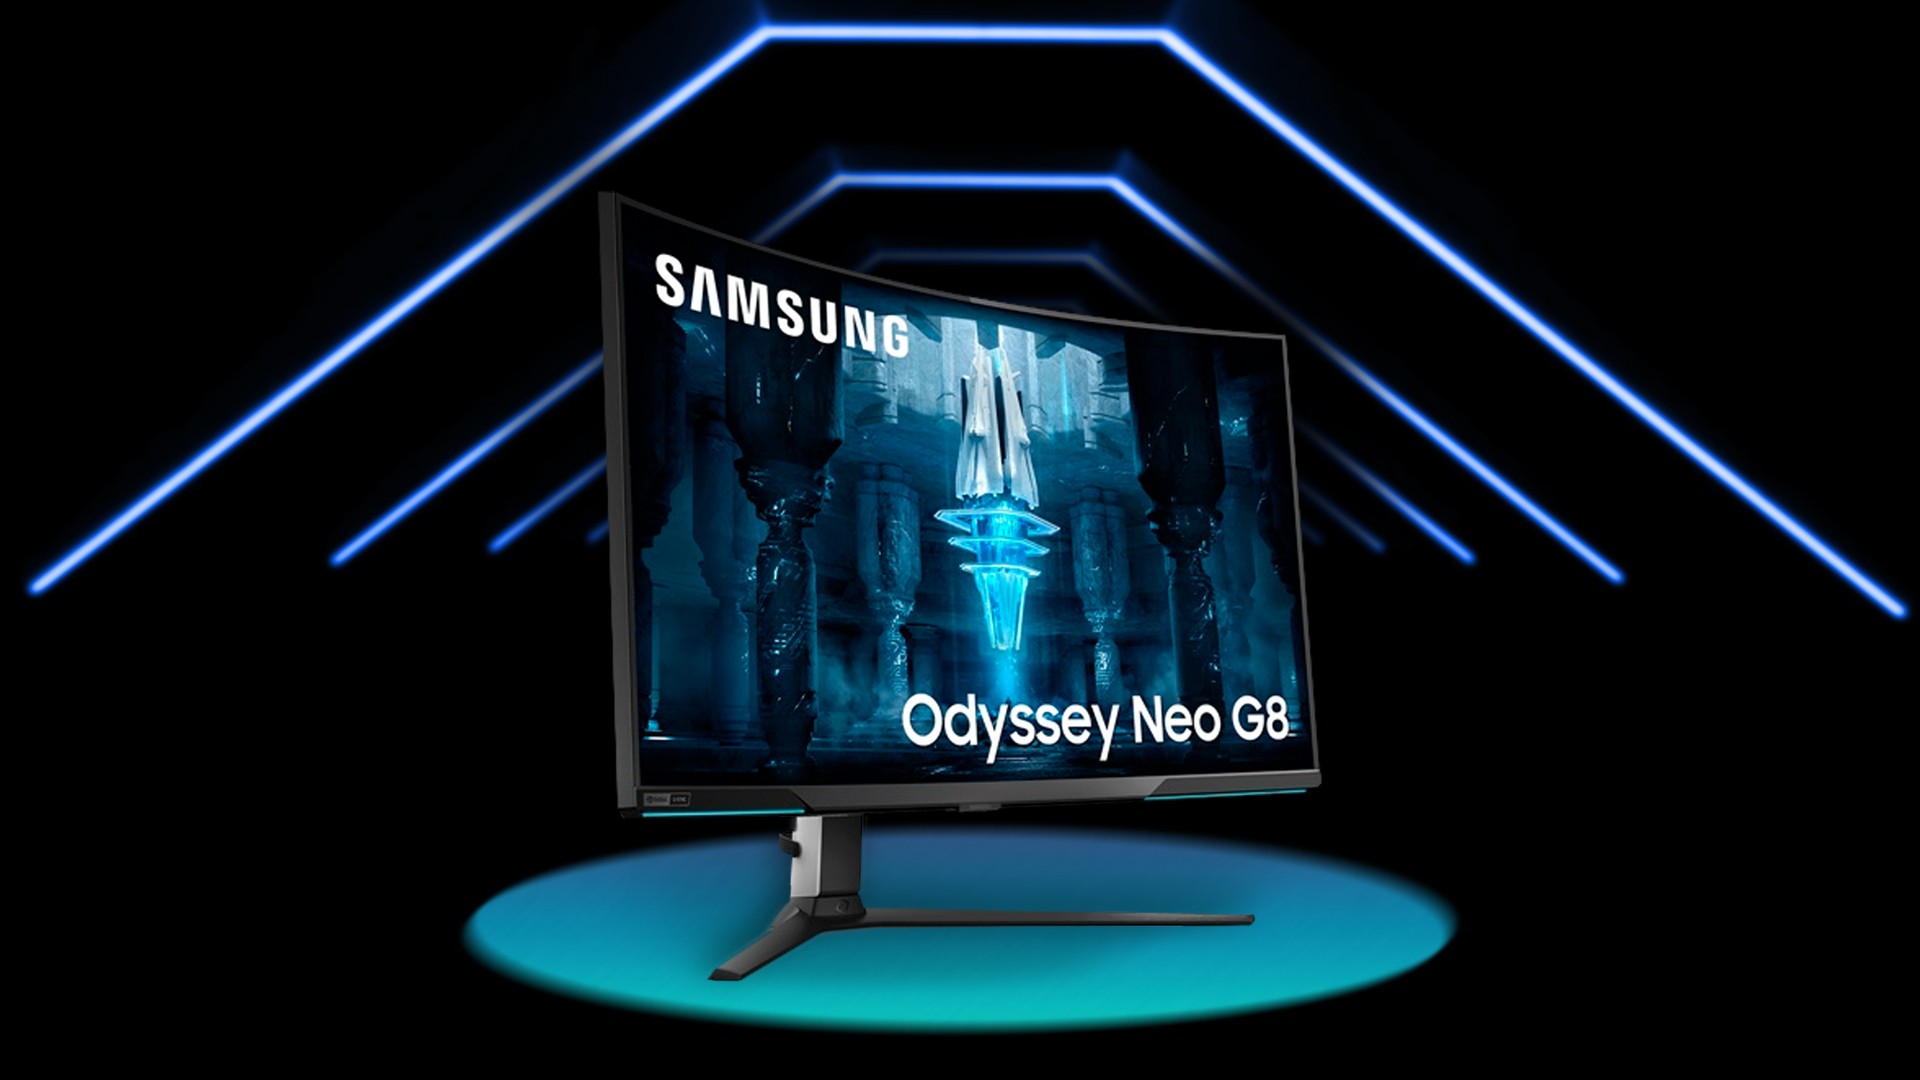 Samsung anuncia Odyssey Neo G8, seu novo monitor com resoluo 4K e tela curva de 240 Hz; confira